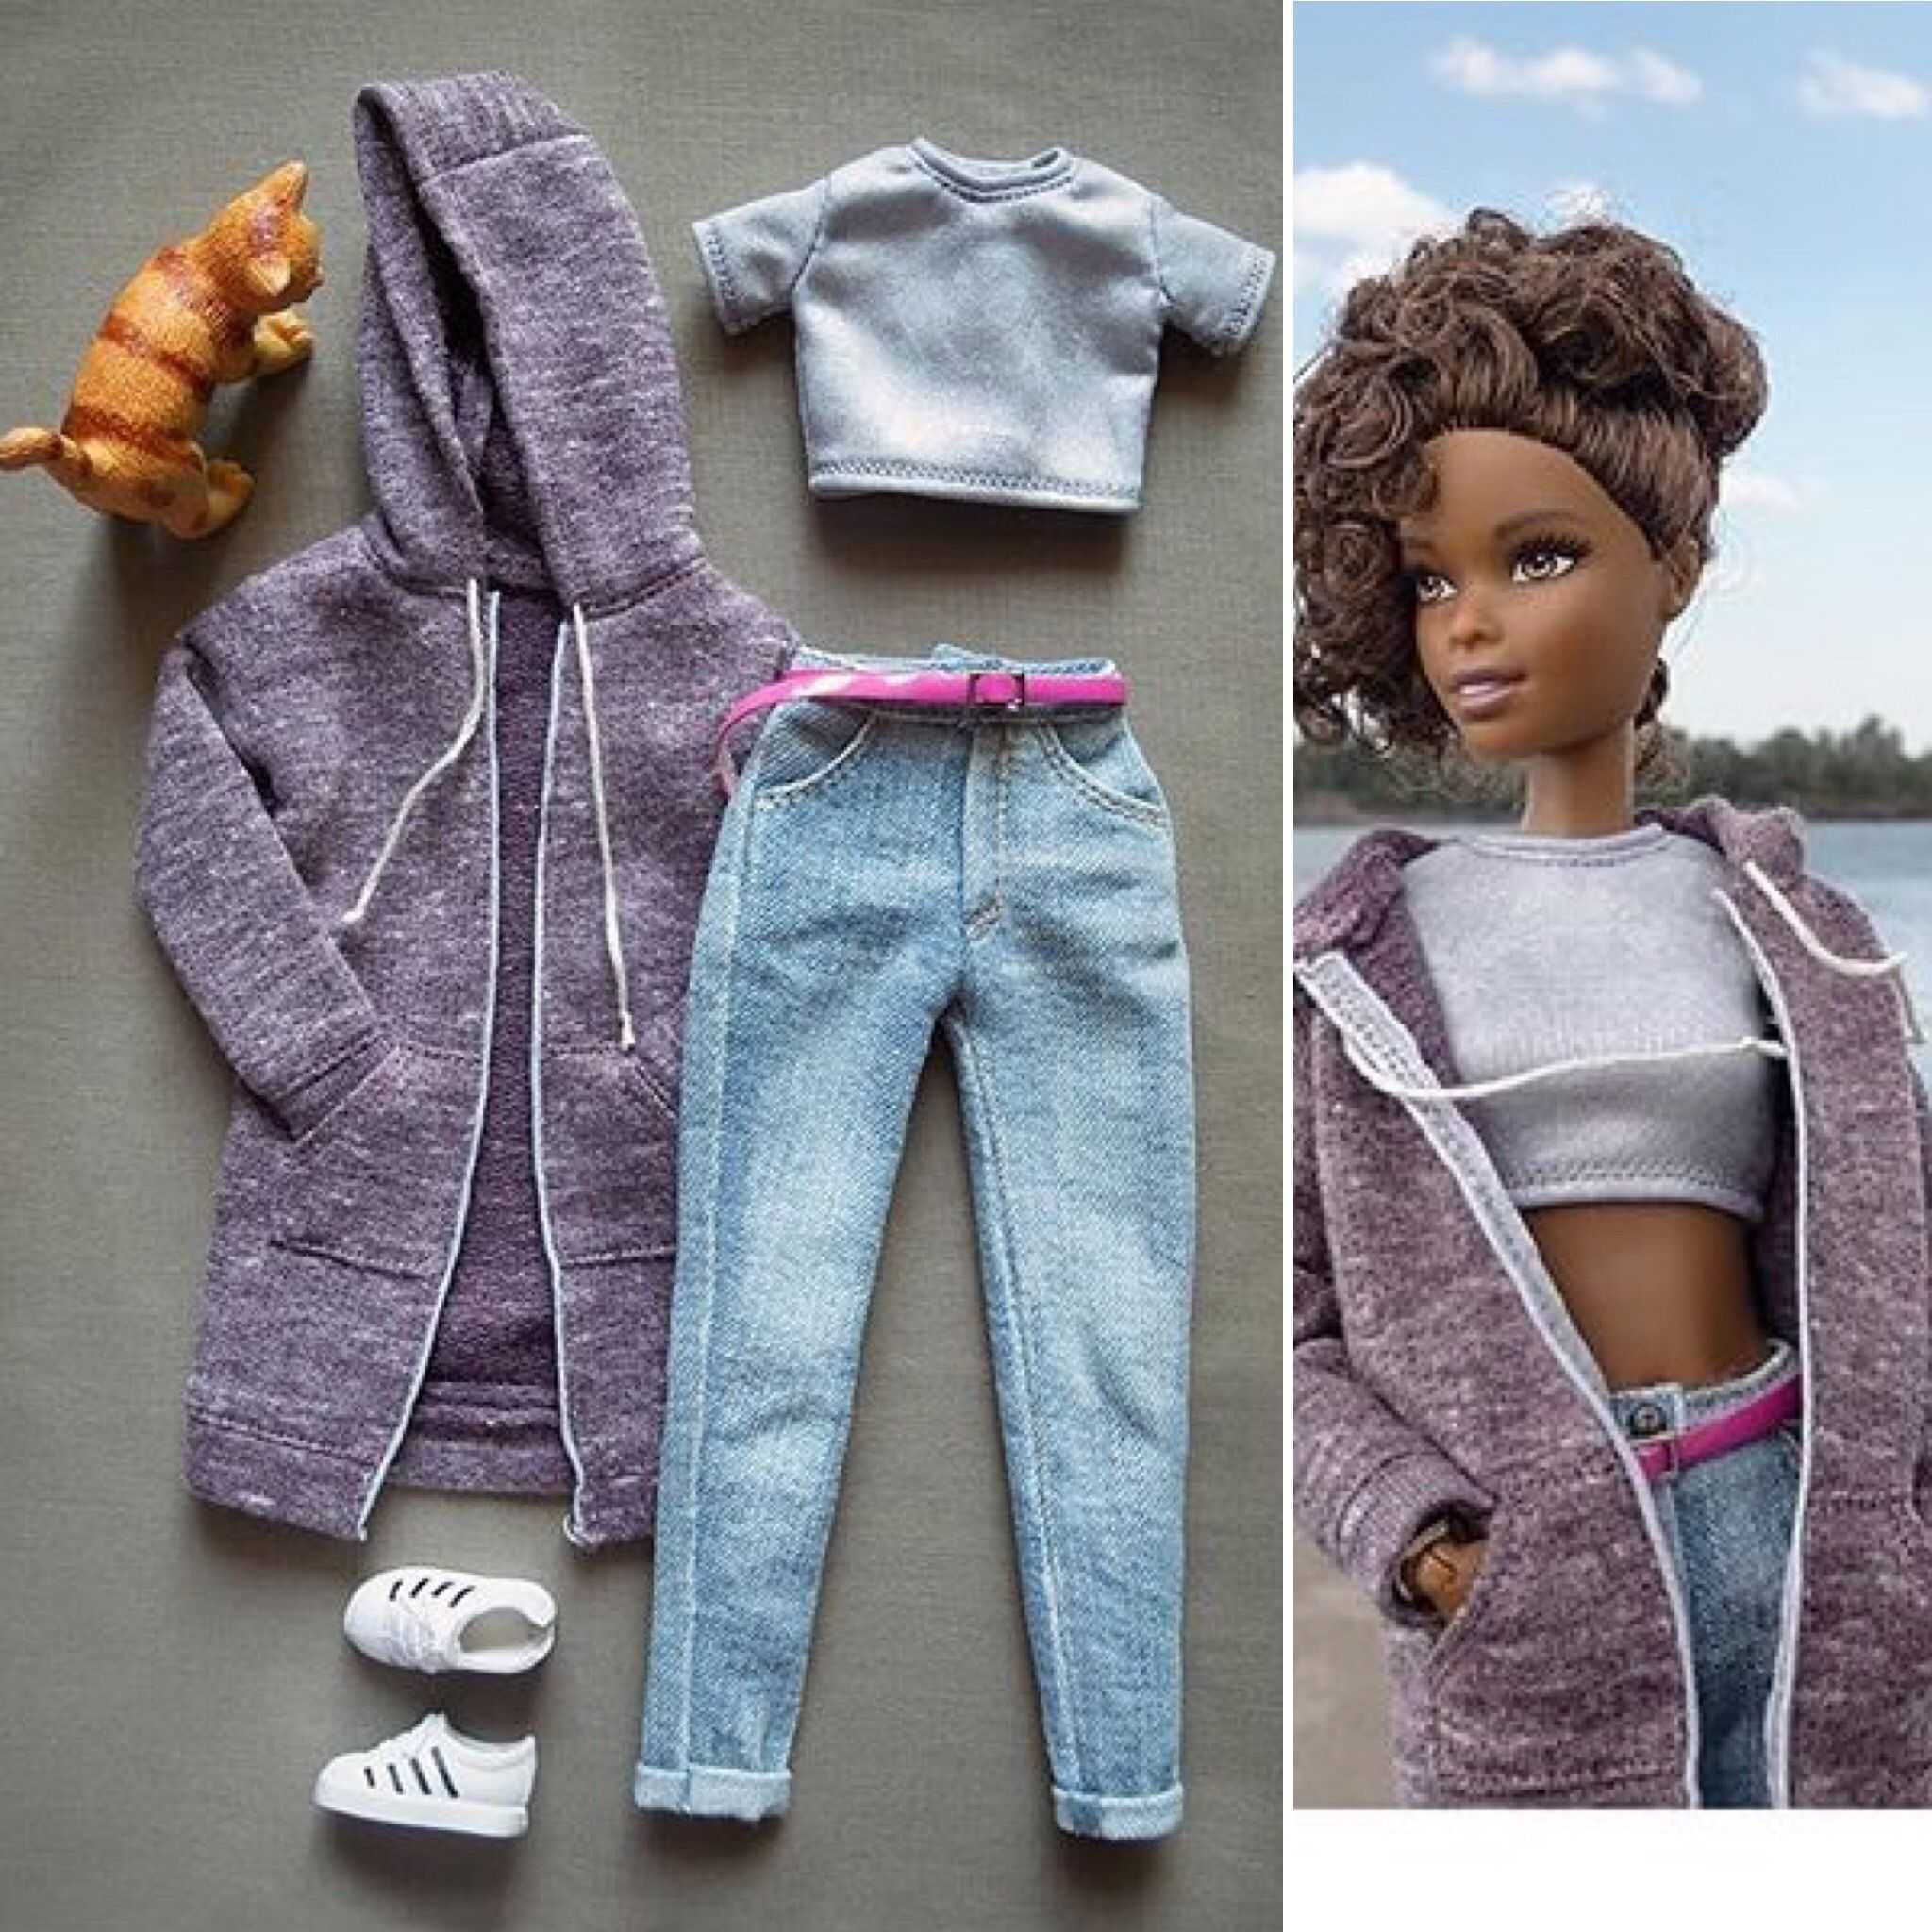 Костюм для кукол своими руками. Одежда для кукол. Одежда для кукол своими руками. Одежда для Барби. Сшить одежду для кукол.